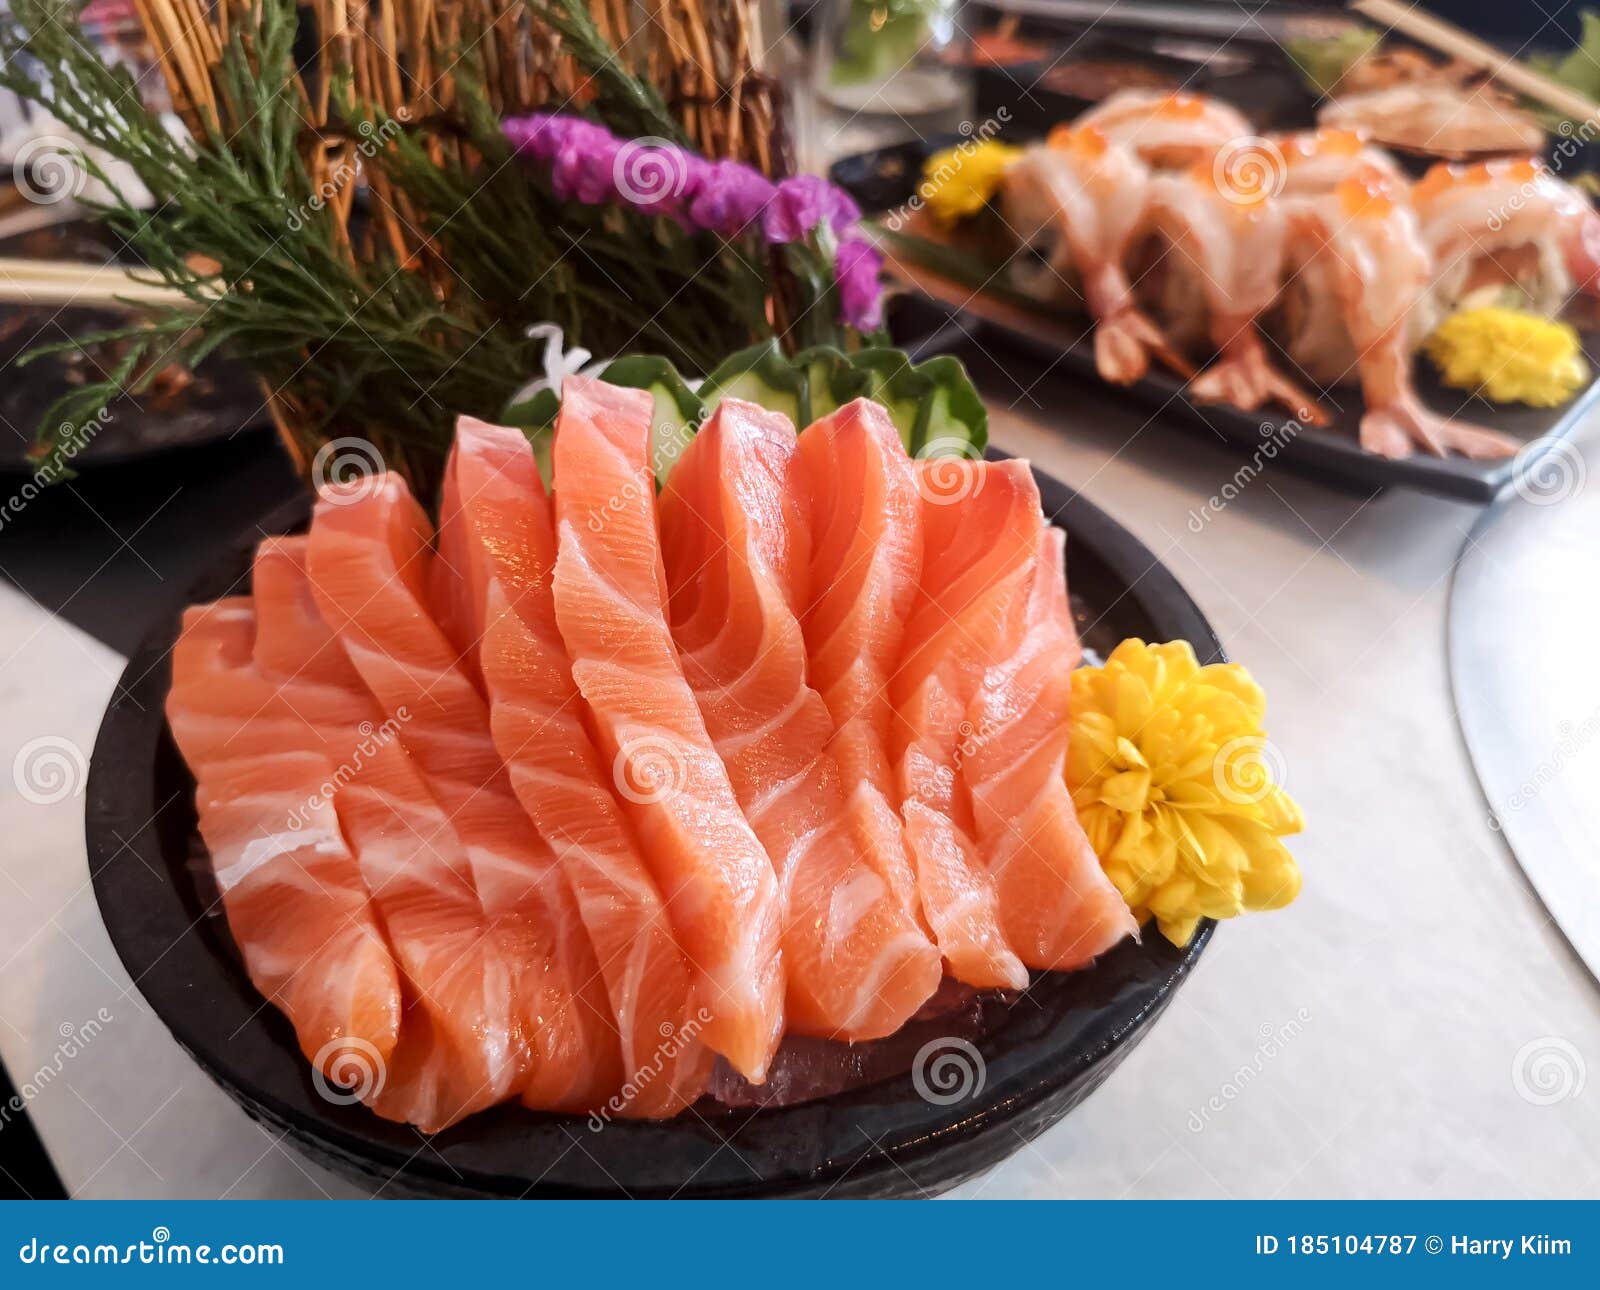 juicy yummy delicious tasty raw and fresh fatty sliced Ã¢â¬â¹Ã¢â¬â¹orange salmon sashimi fish in japanese style popular seafood